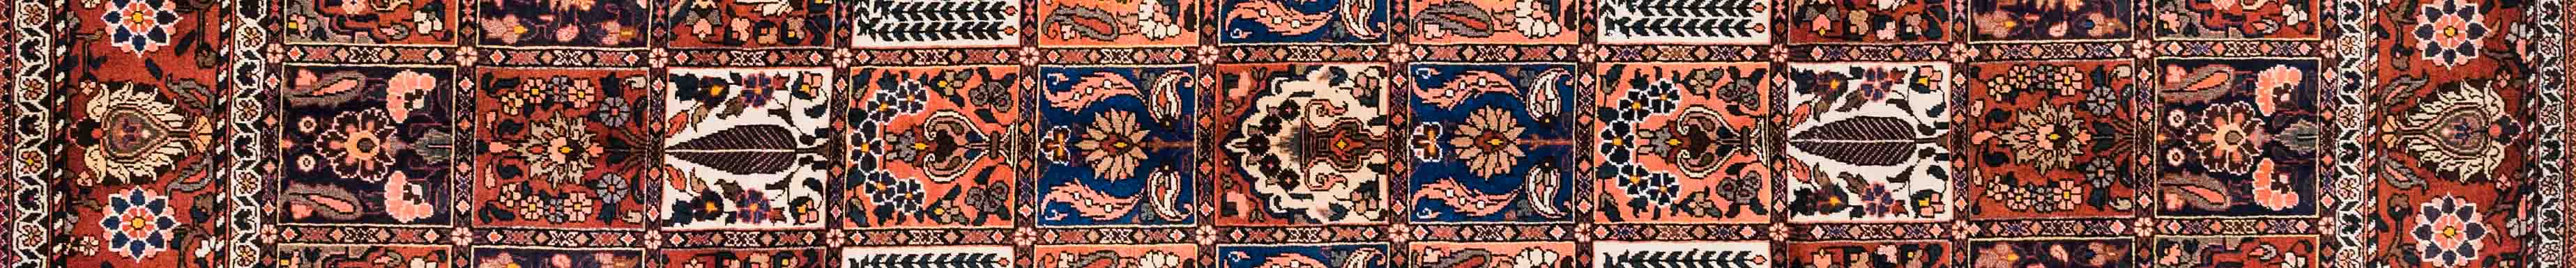 Bakhtiar Persian Carpet Rug N1Carpet Canada Montreal Tapis Persan 2850